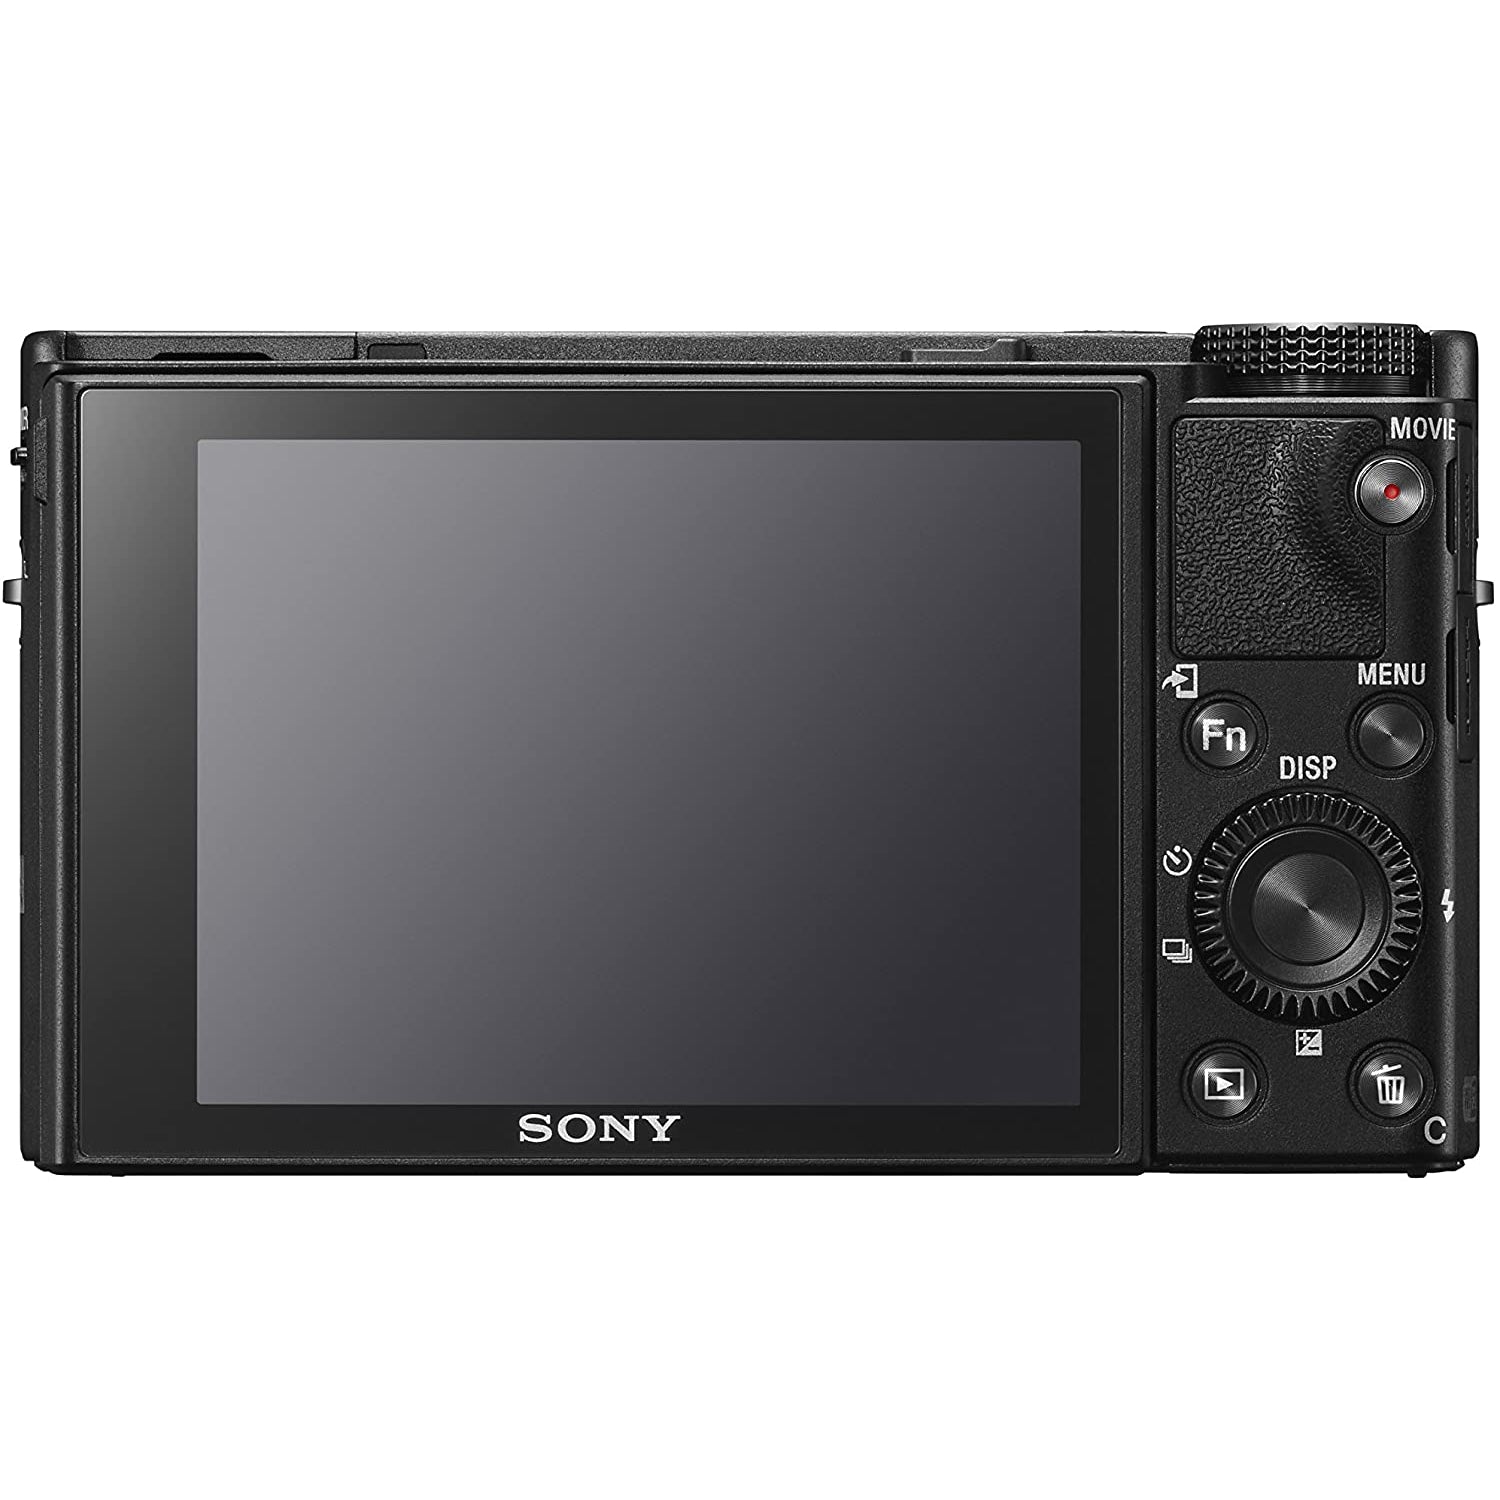 Sony RX100 VI Advanced Premium Compact Camera